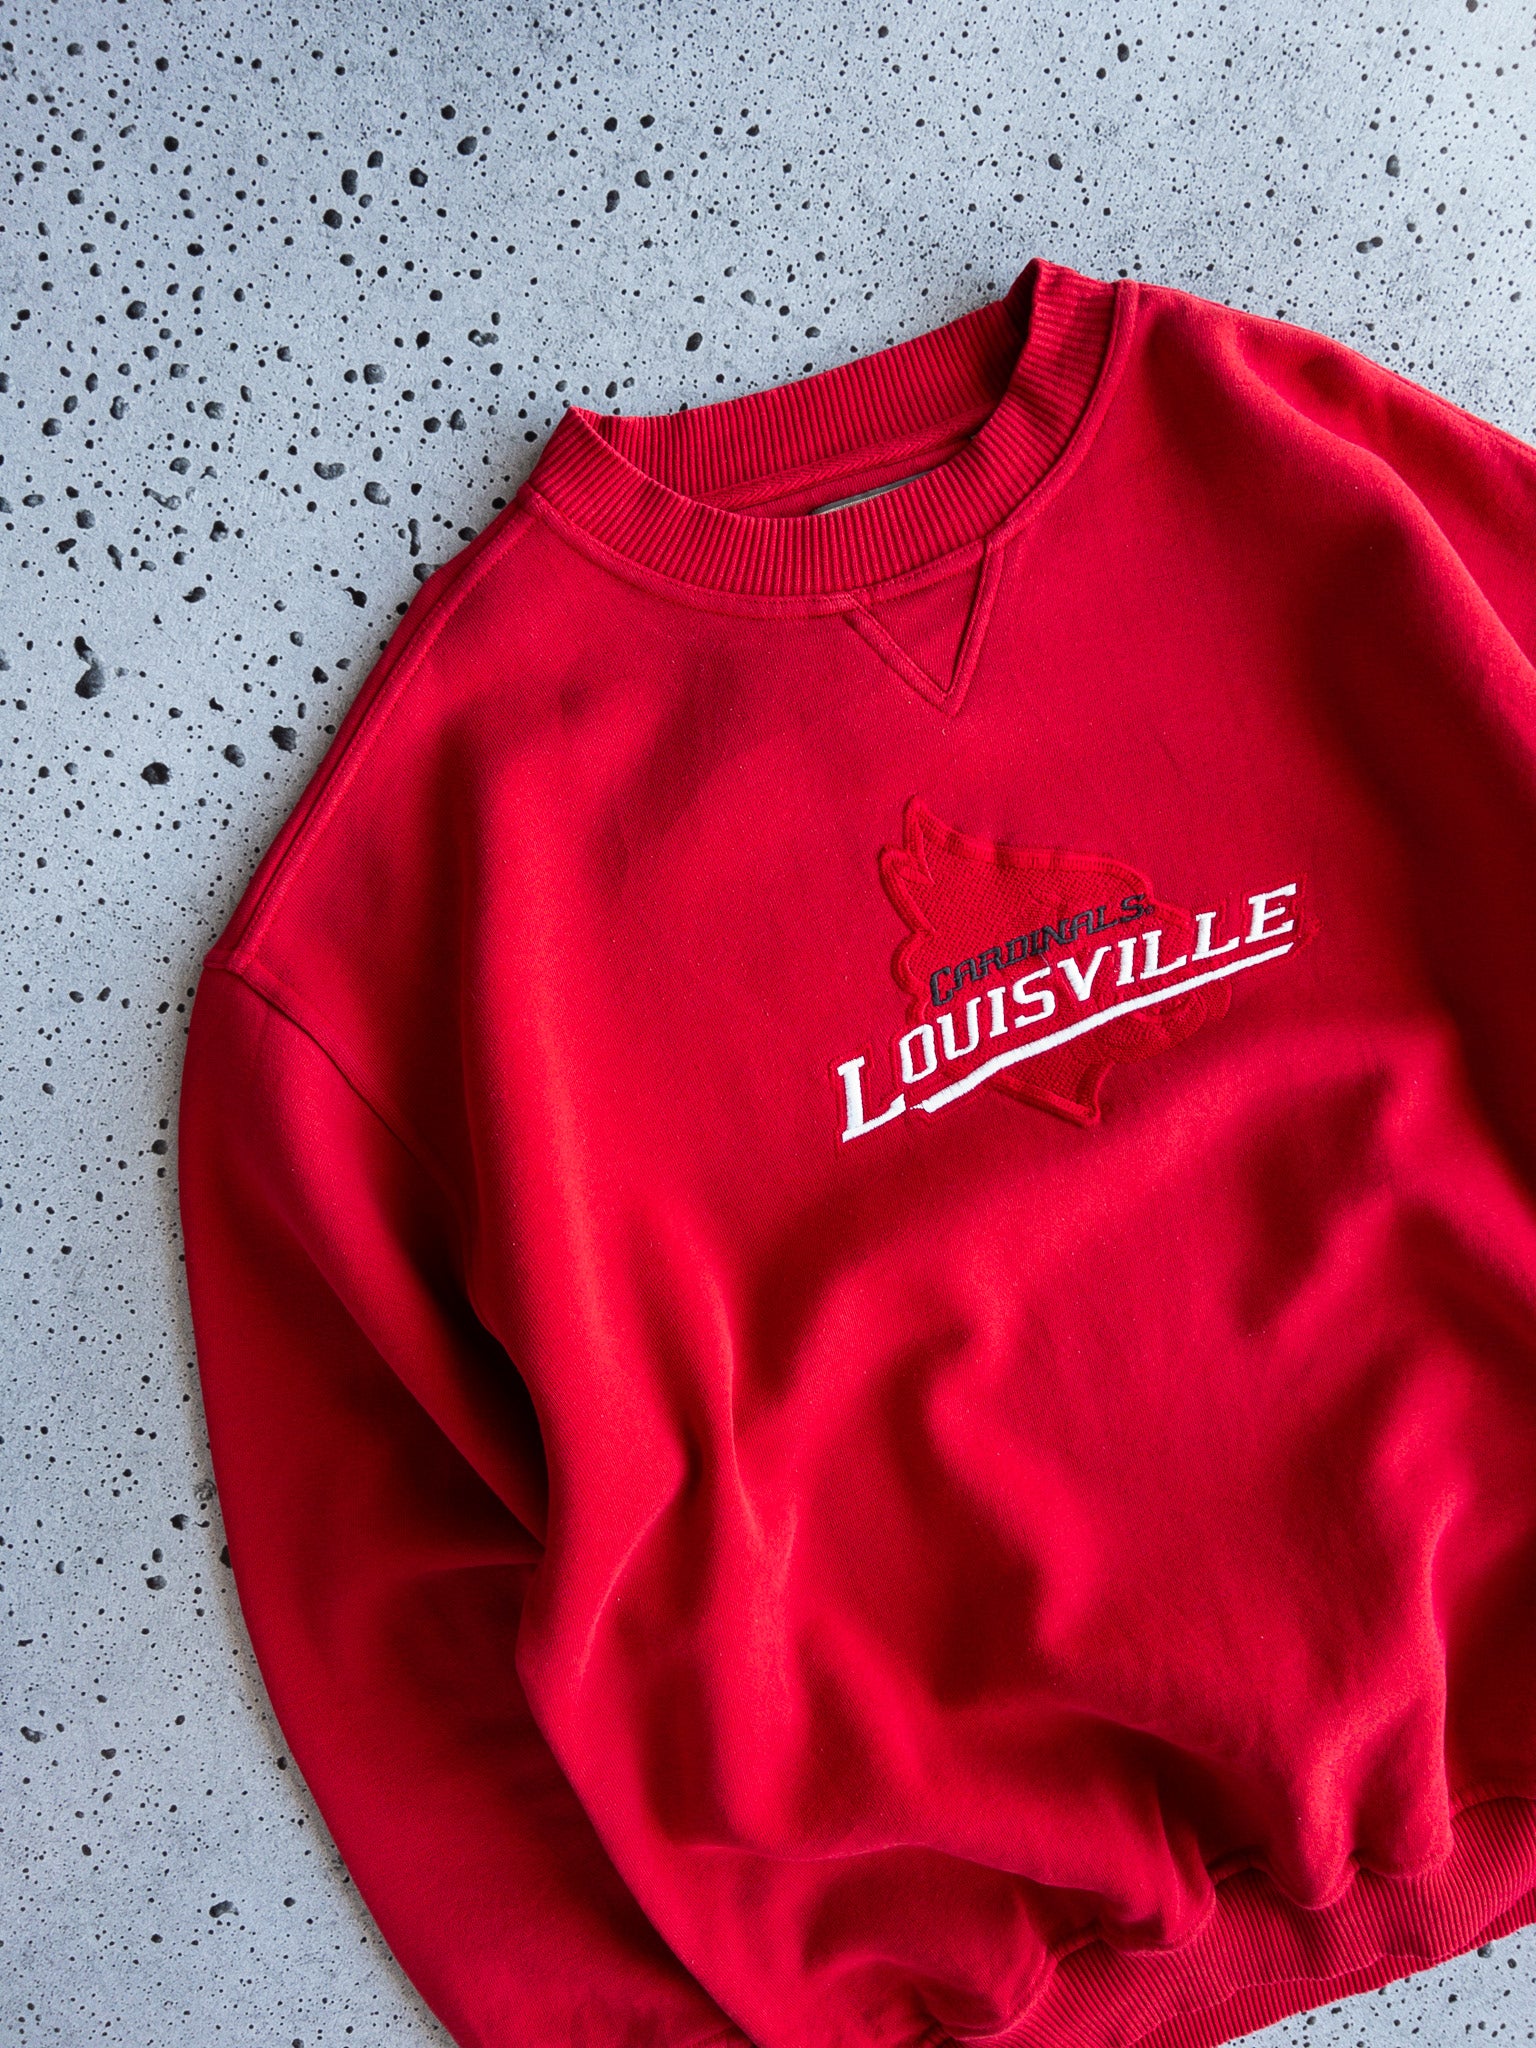 Vintage Louisville Cardinals Sweatshirt (XL)